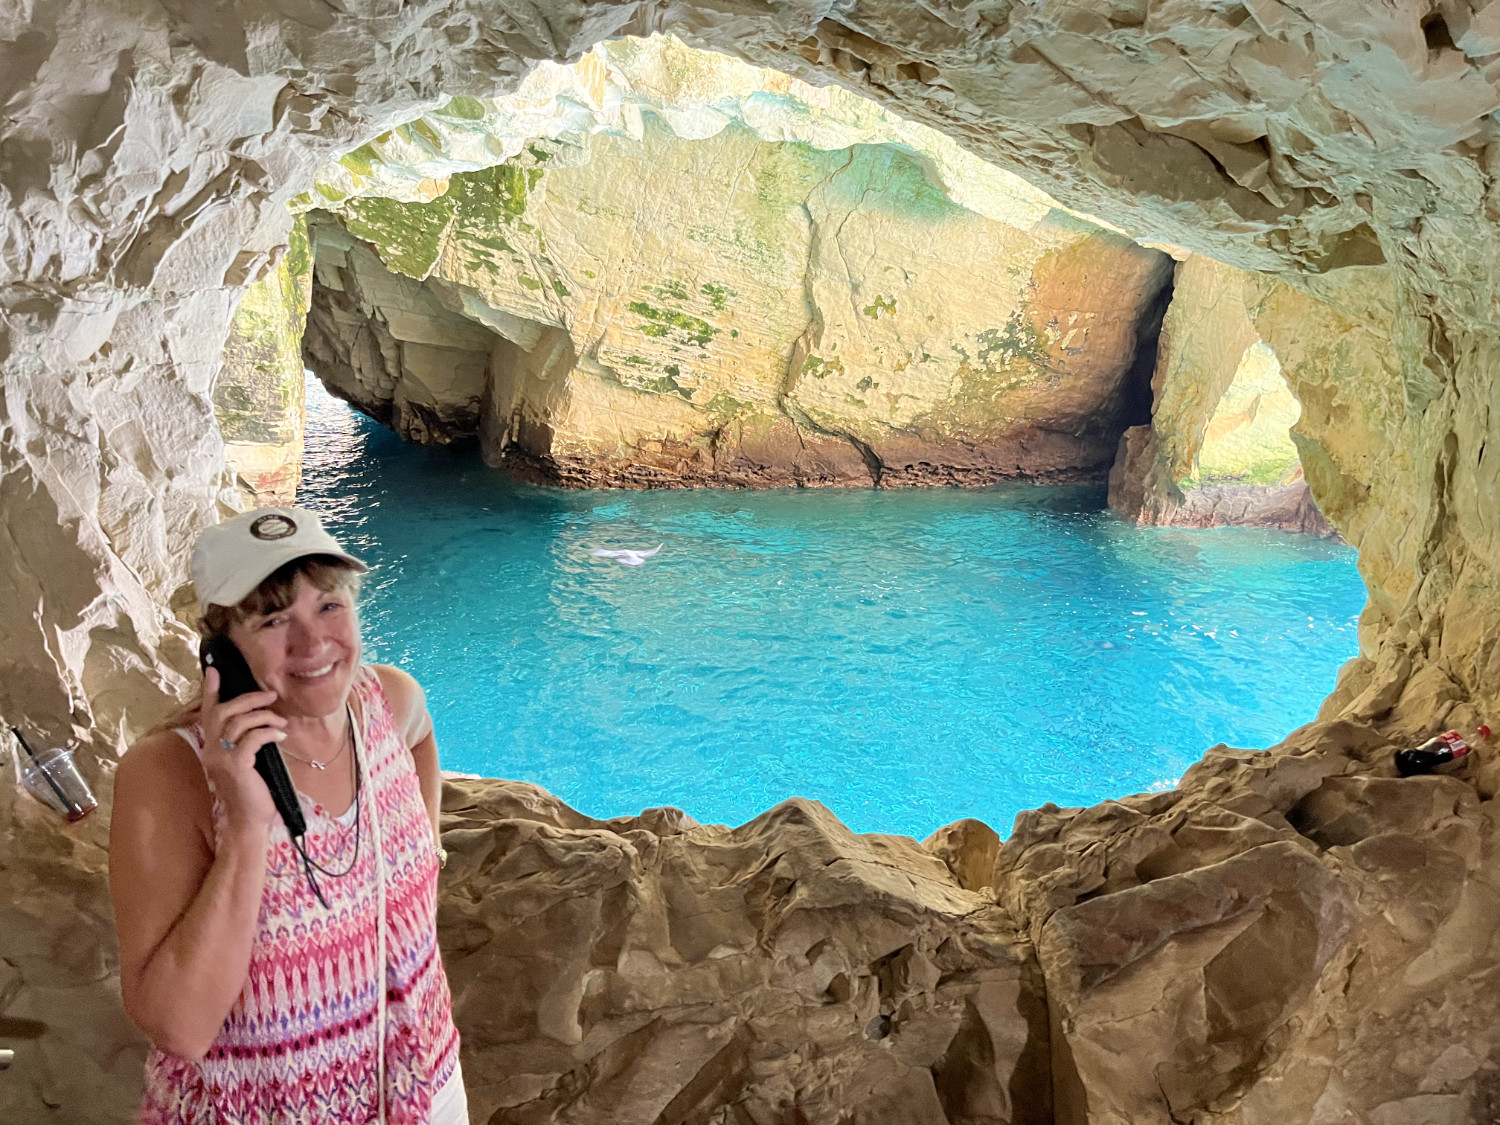 Kathy at Grottos